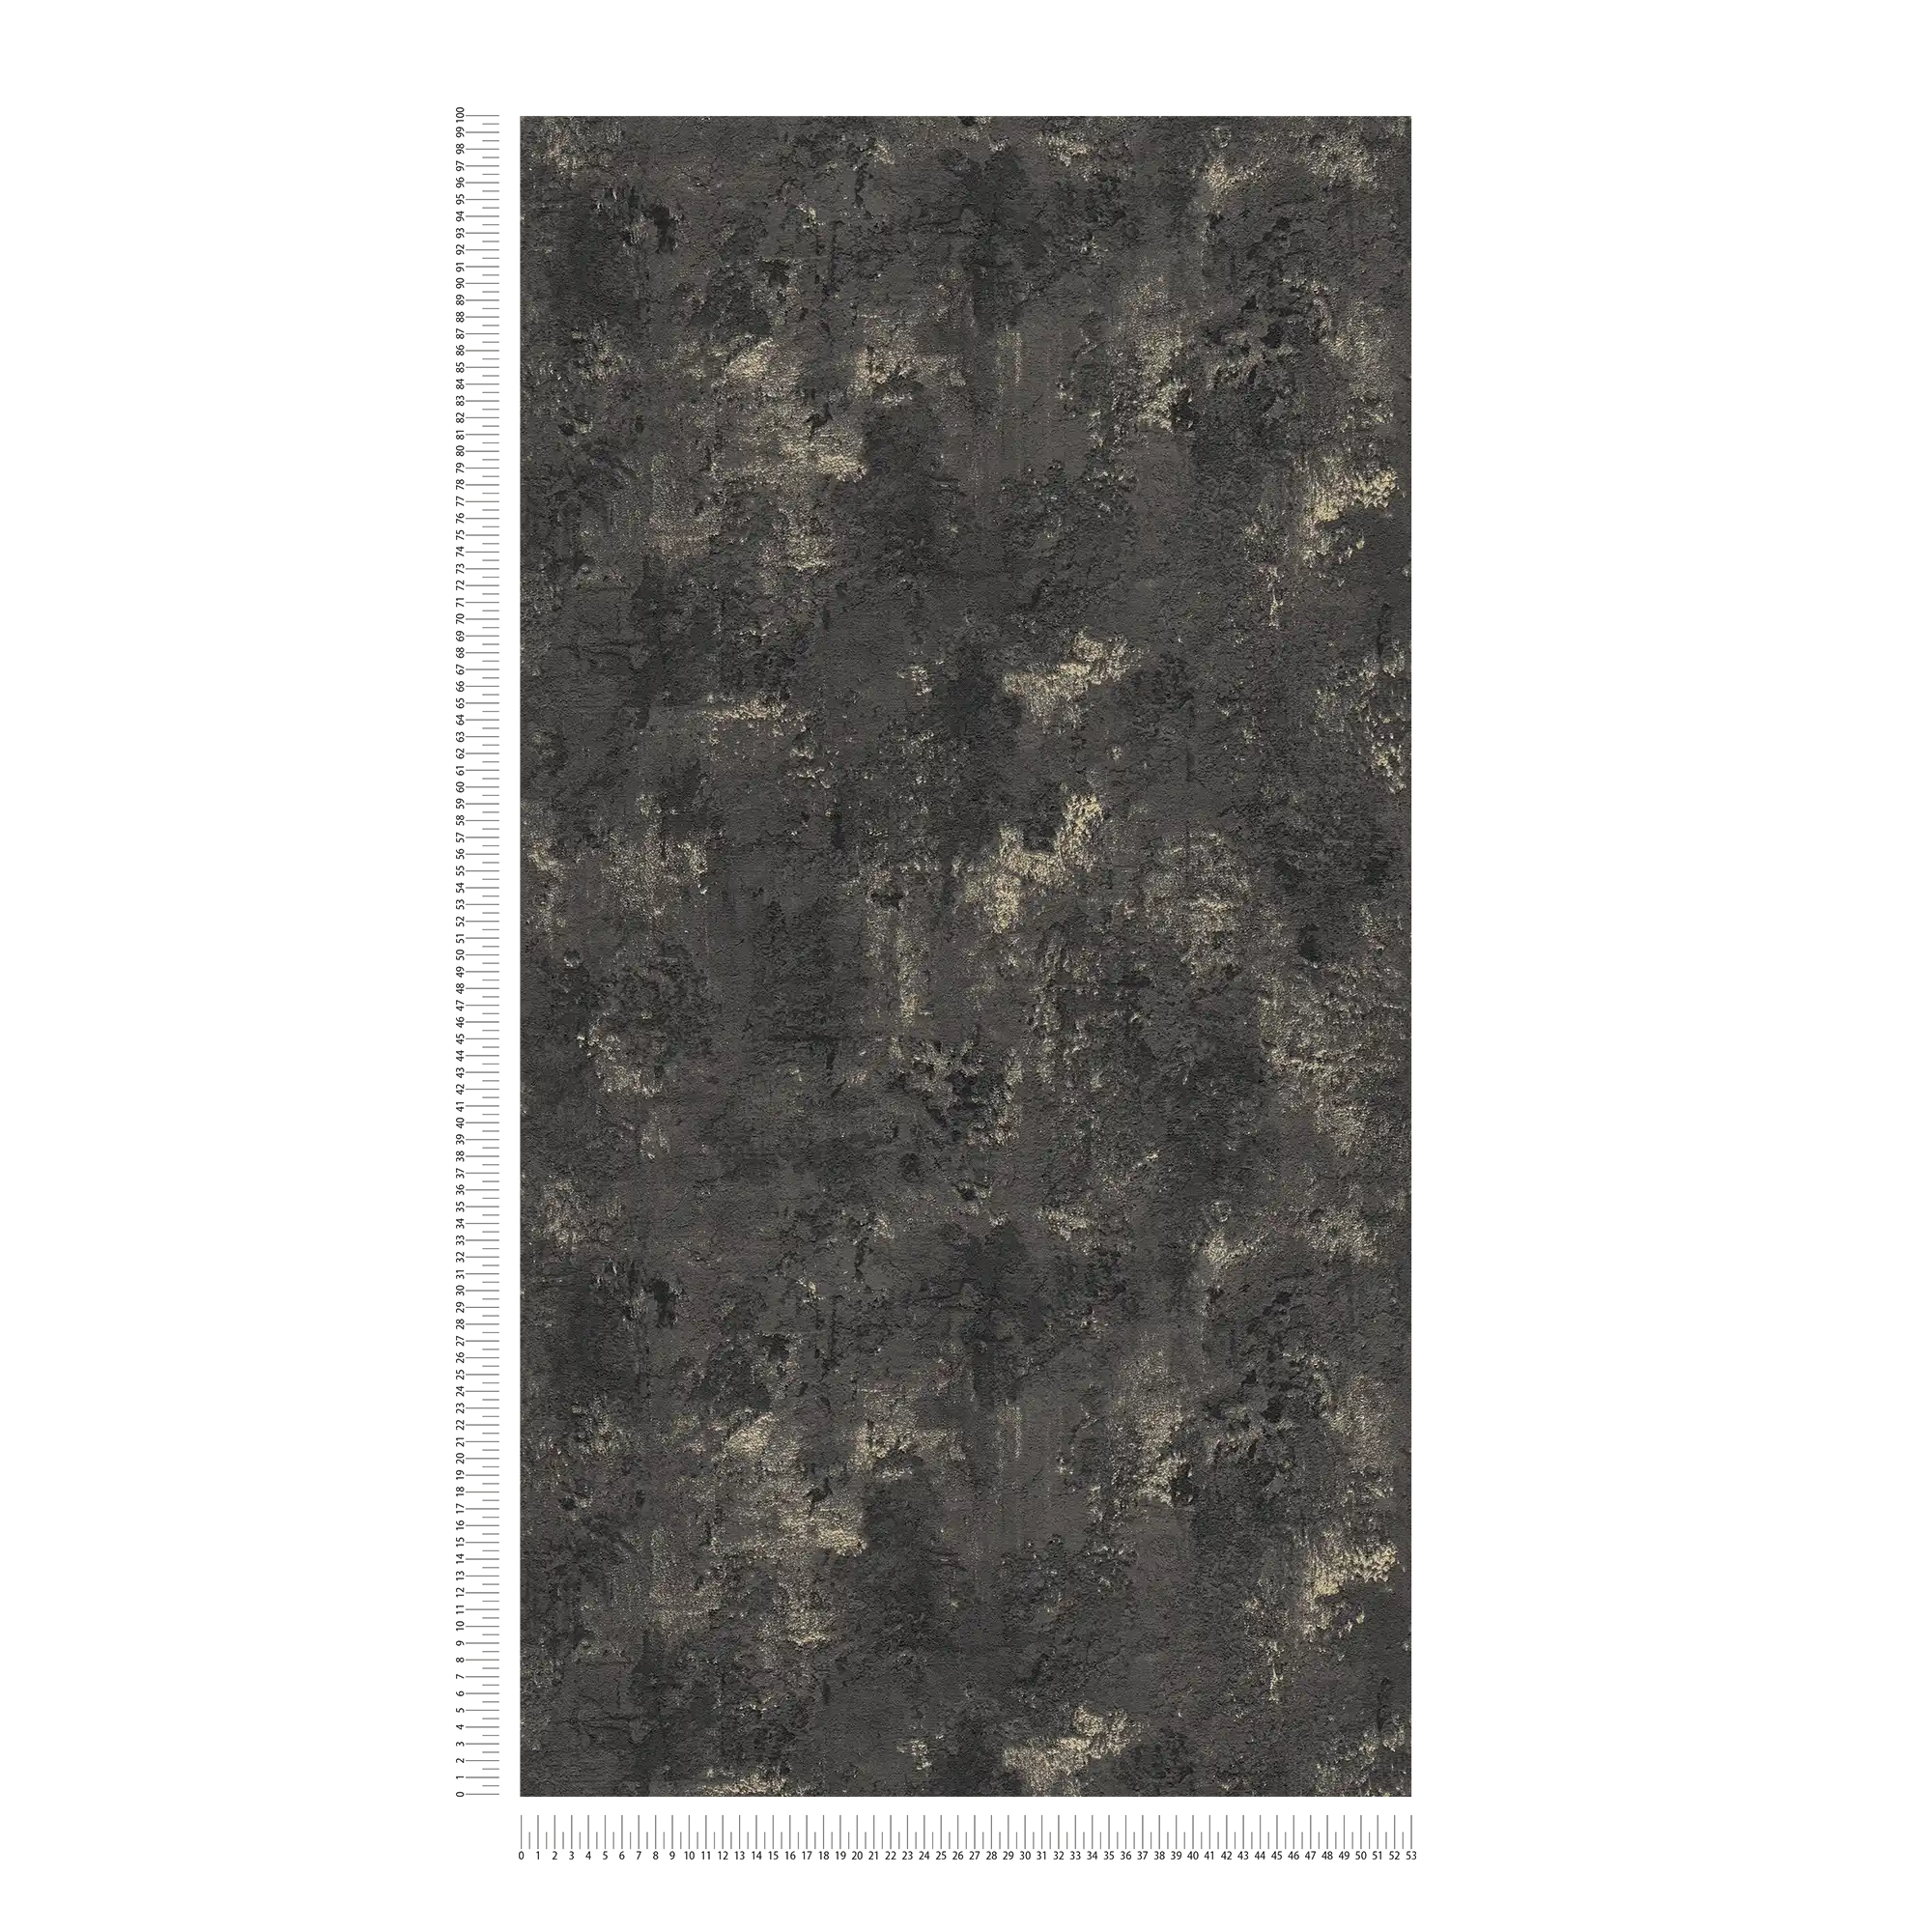             Papel pintado con textura negra y aspecto de hormigón rústico
        